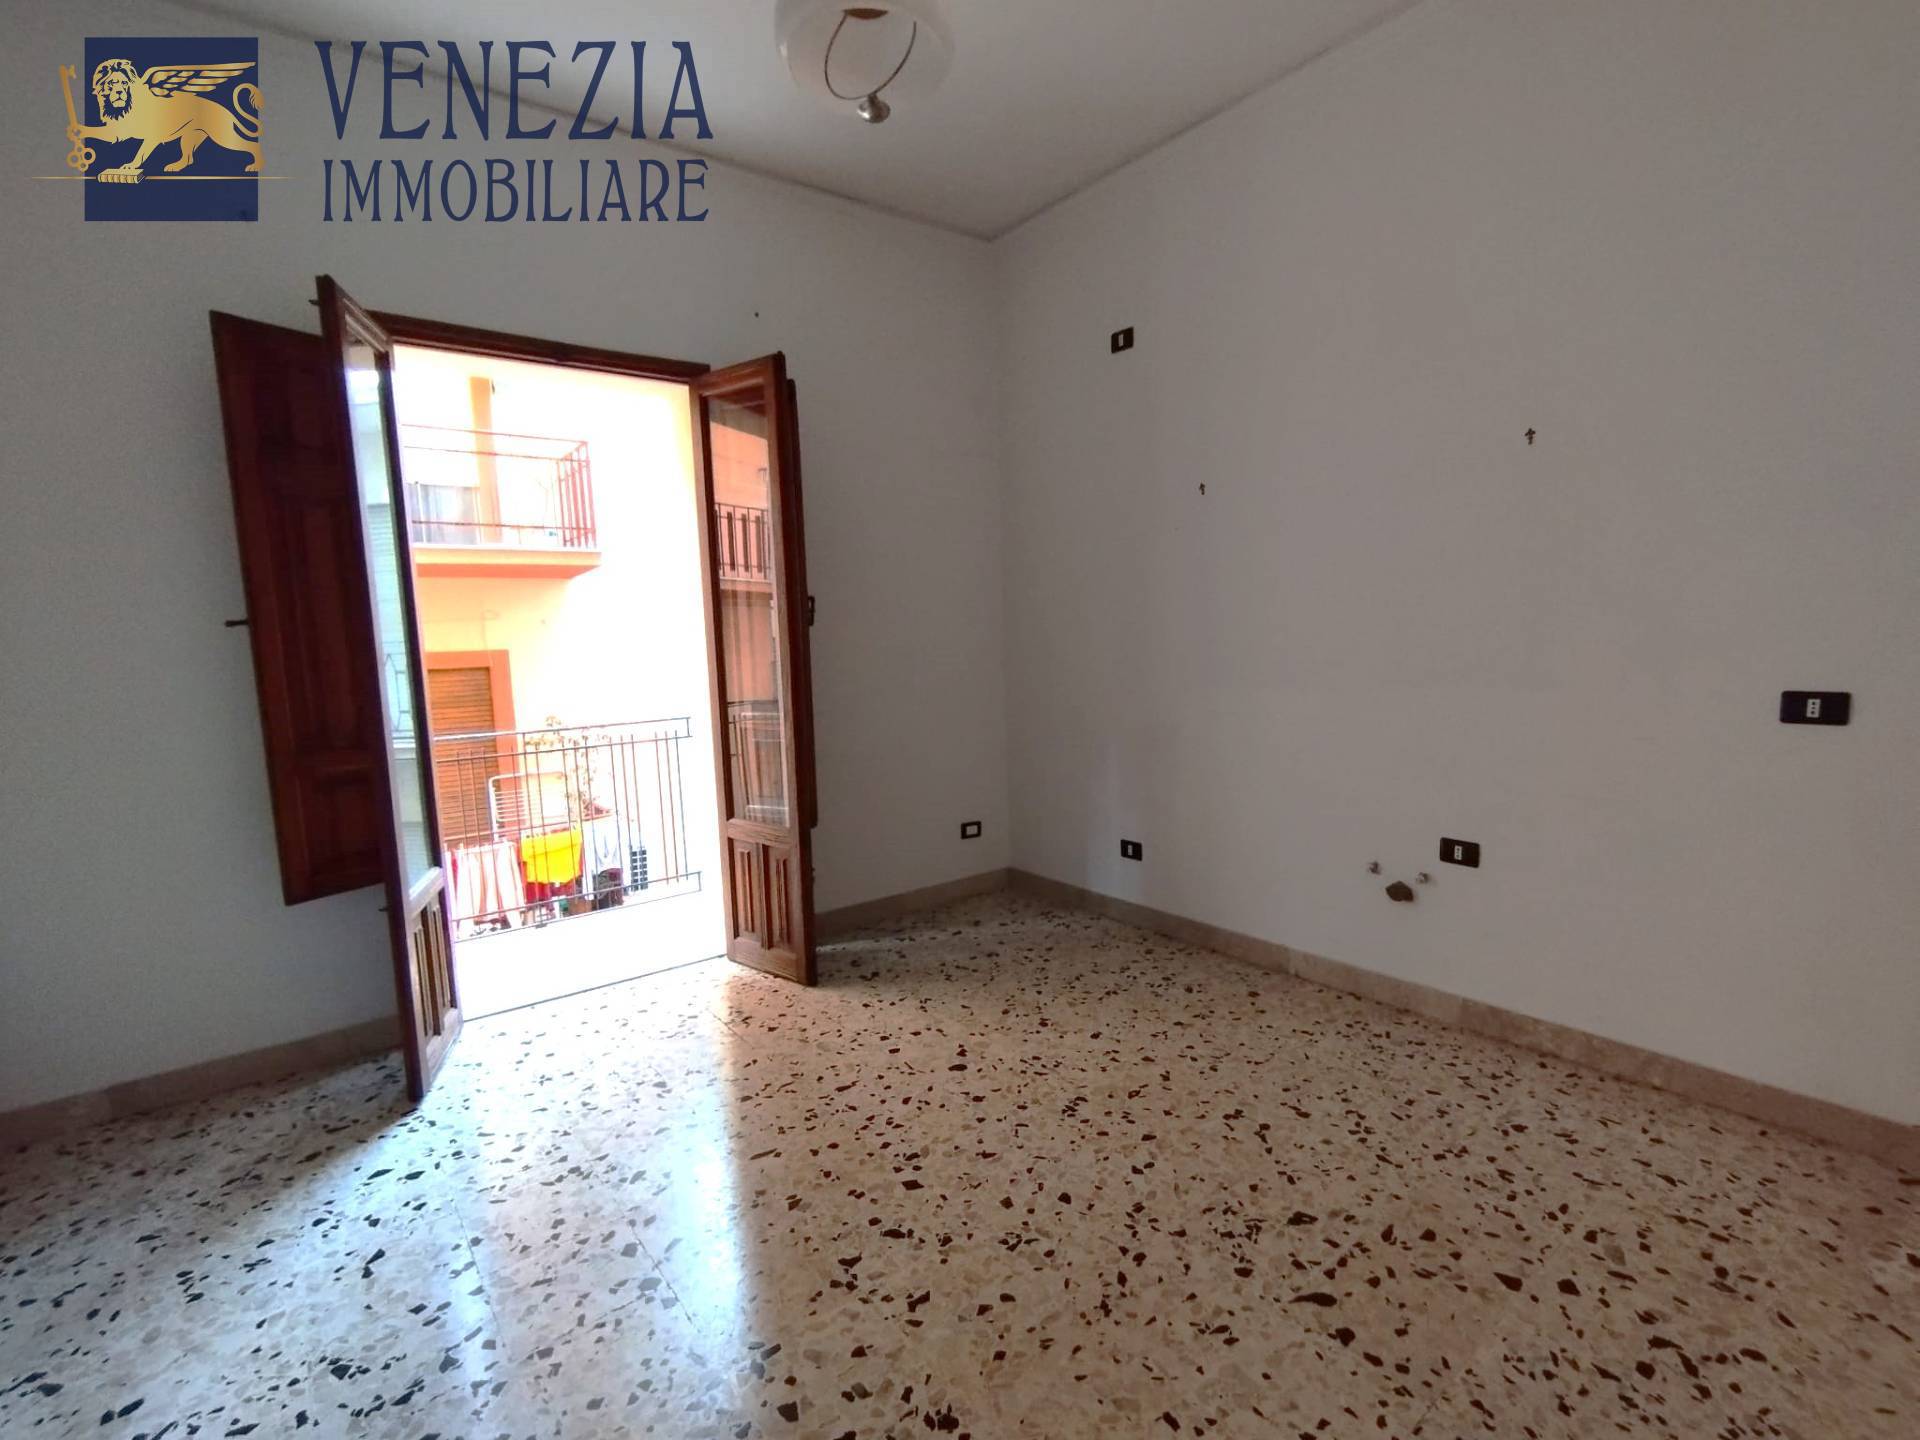 Appartamento in vendita a Sciacca, 2 locali, zona Località: CentroStorico, prezzo € 44.000 | PortaleAgenzieImmobiliari.it